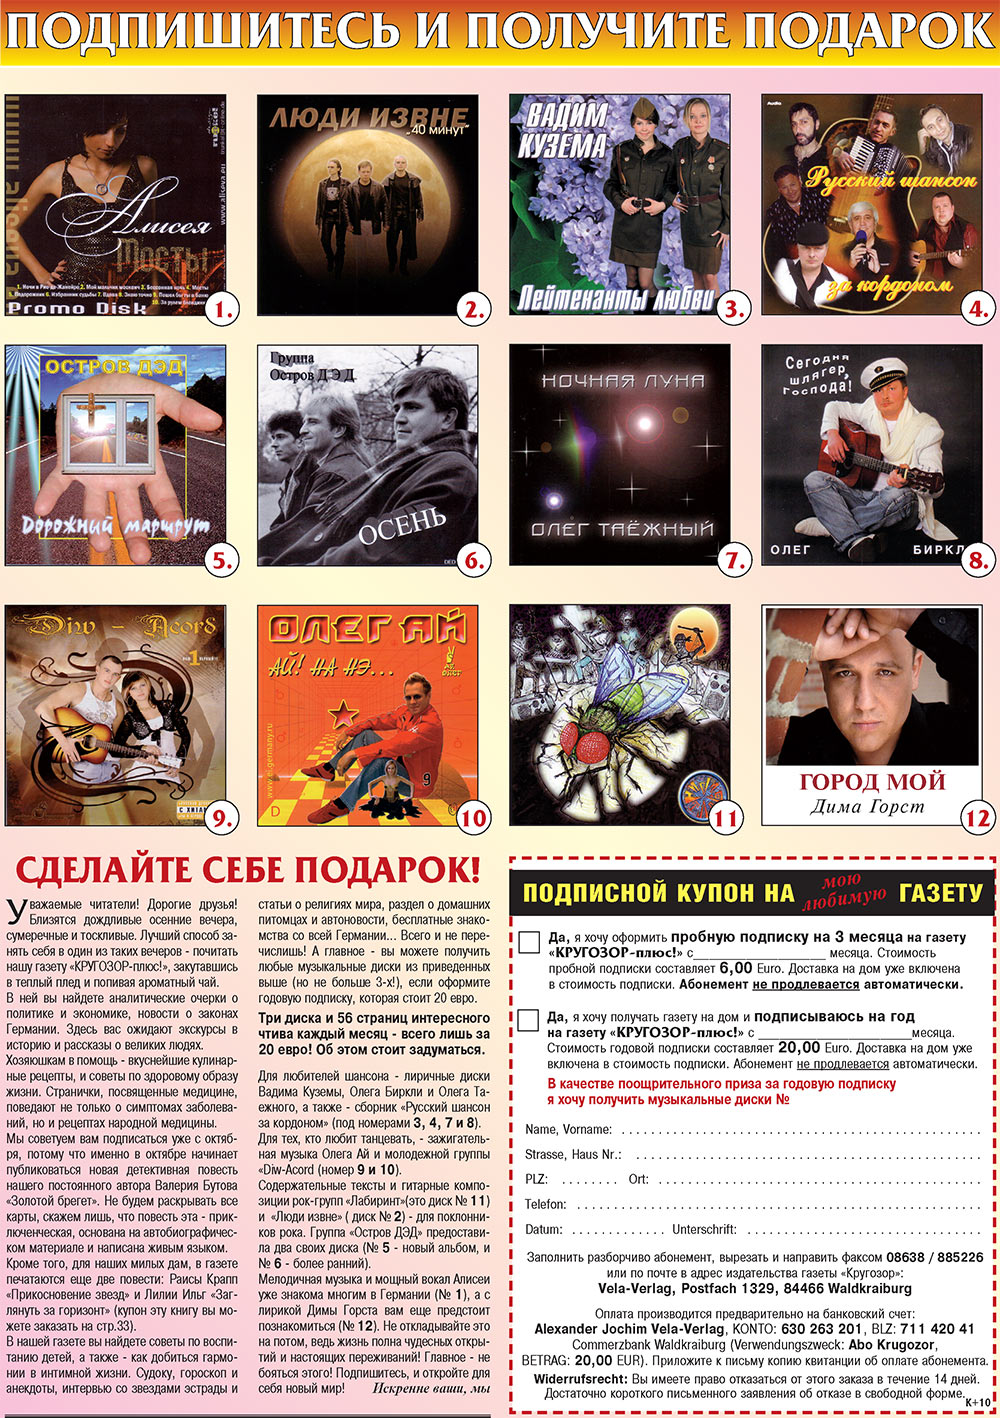 Кругозор плюс!, газета. 2008 №10 стр.56